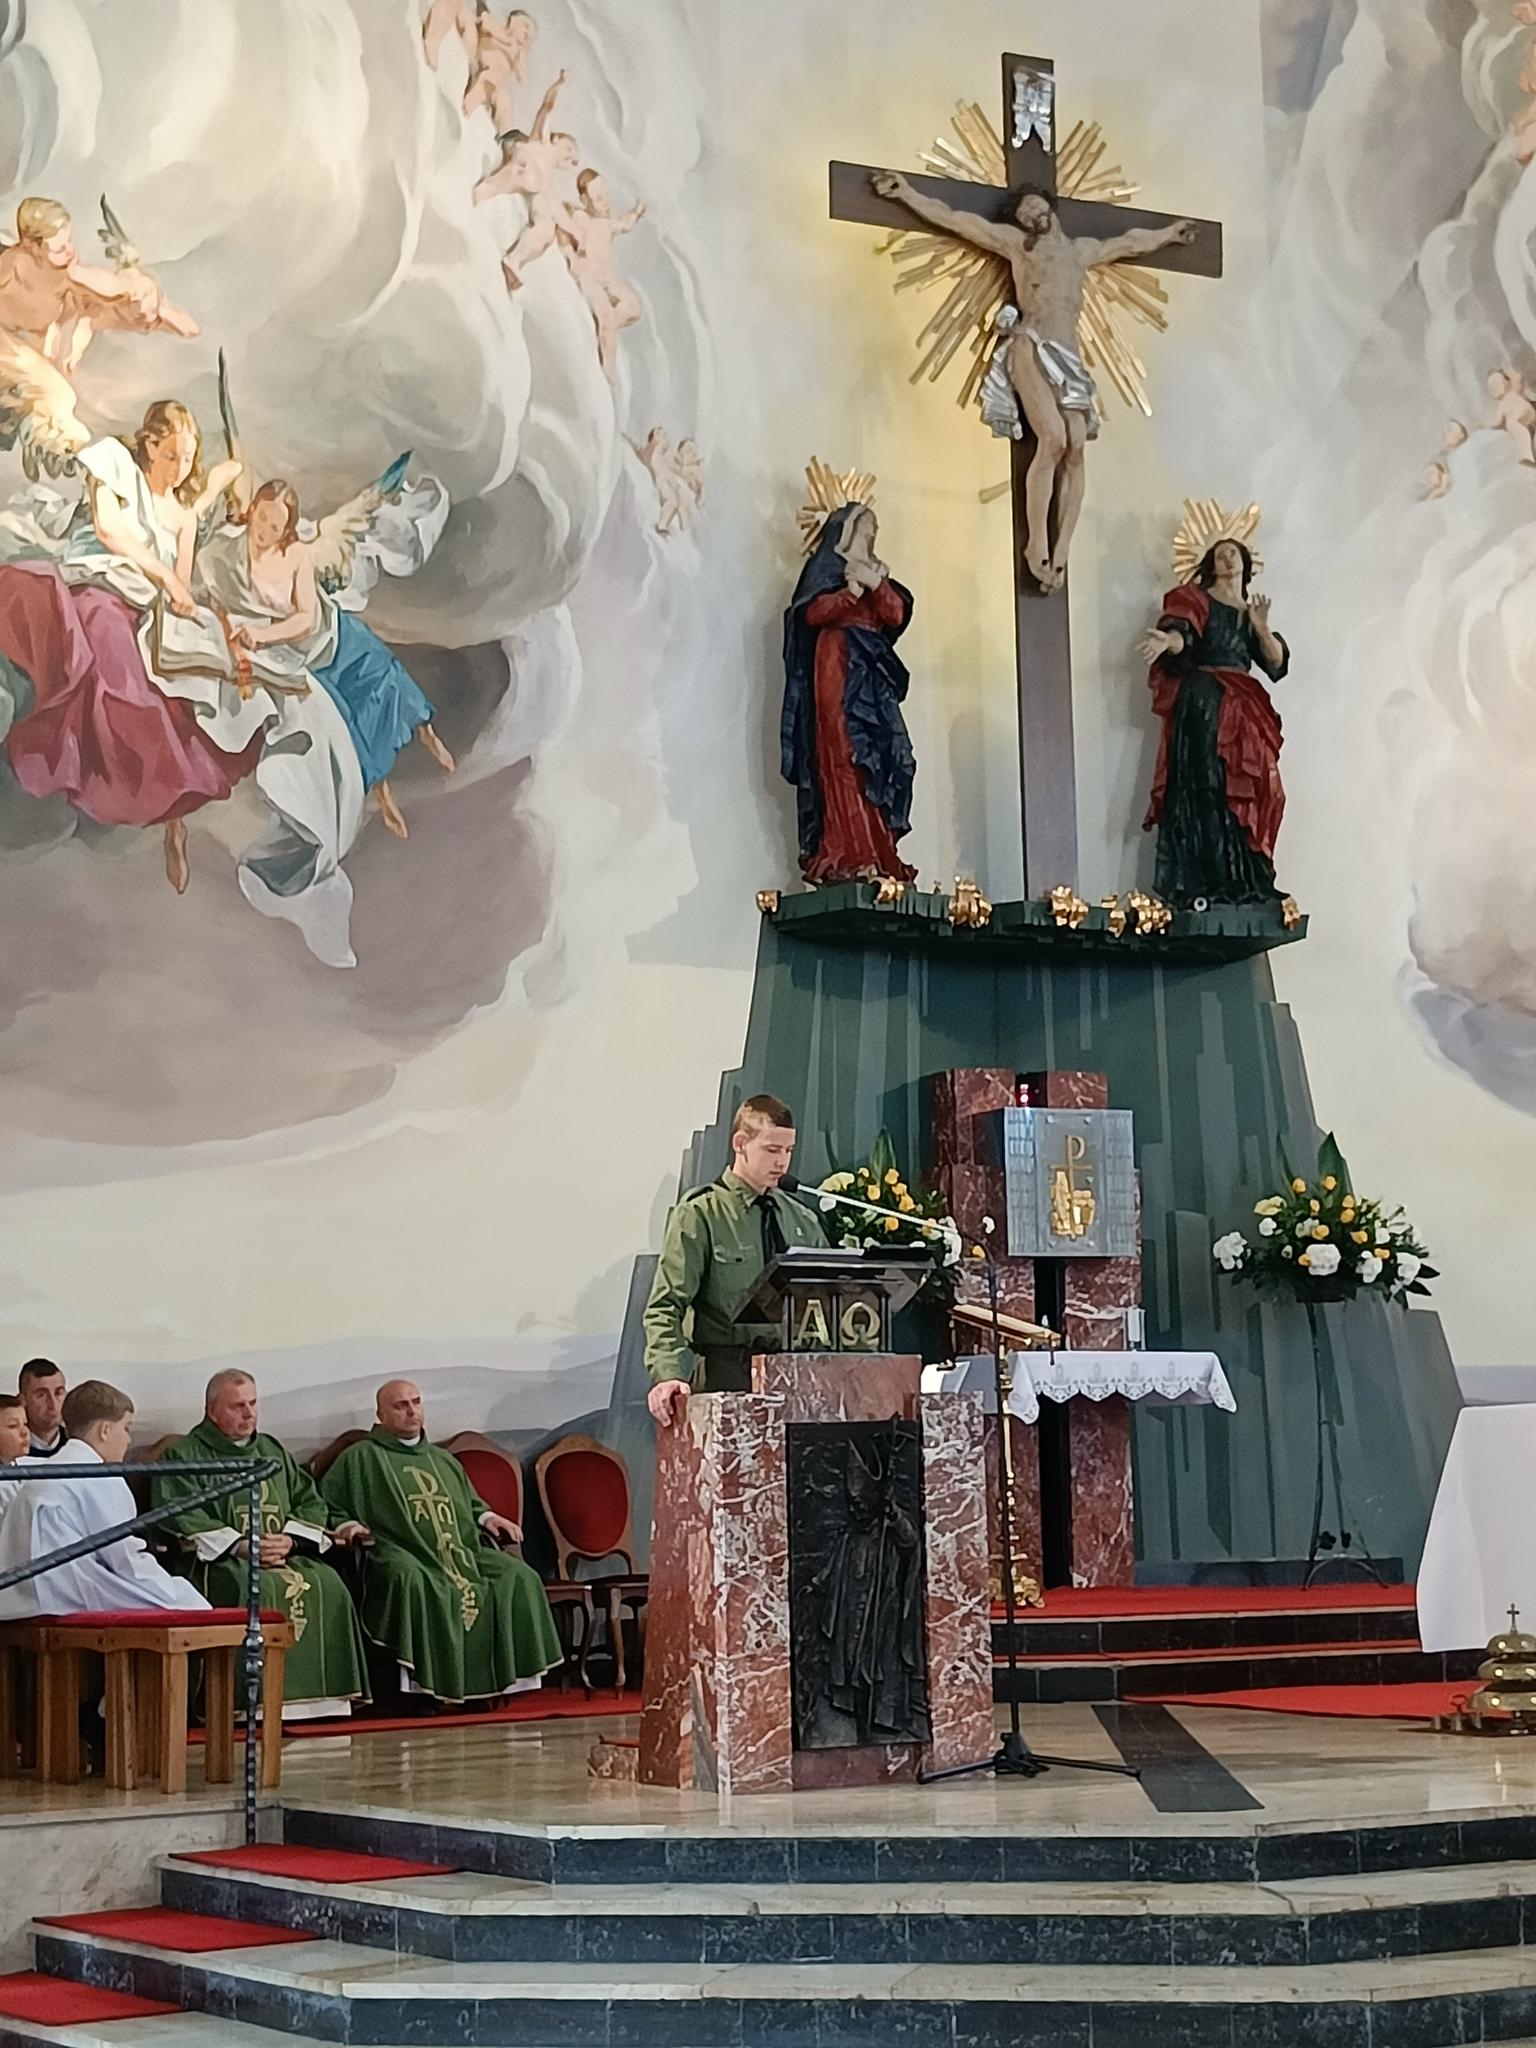 Dzień Papieski | Wychowanek MOW w harcerskim mundurze podczas mszy w kościele czyta za pulpitem na ołtarzu. W tle ołtarz - krzyż, figury, freski, obok siedzą księża w ornatach i ministranci..jpg